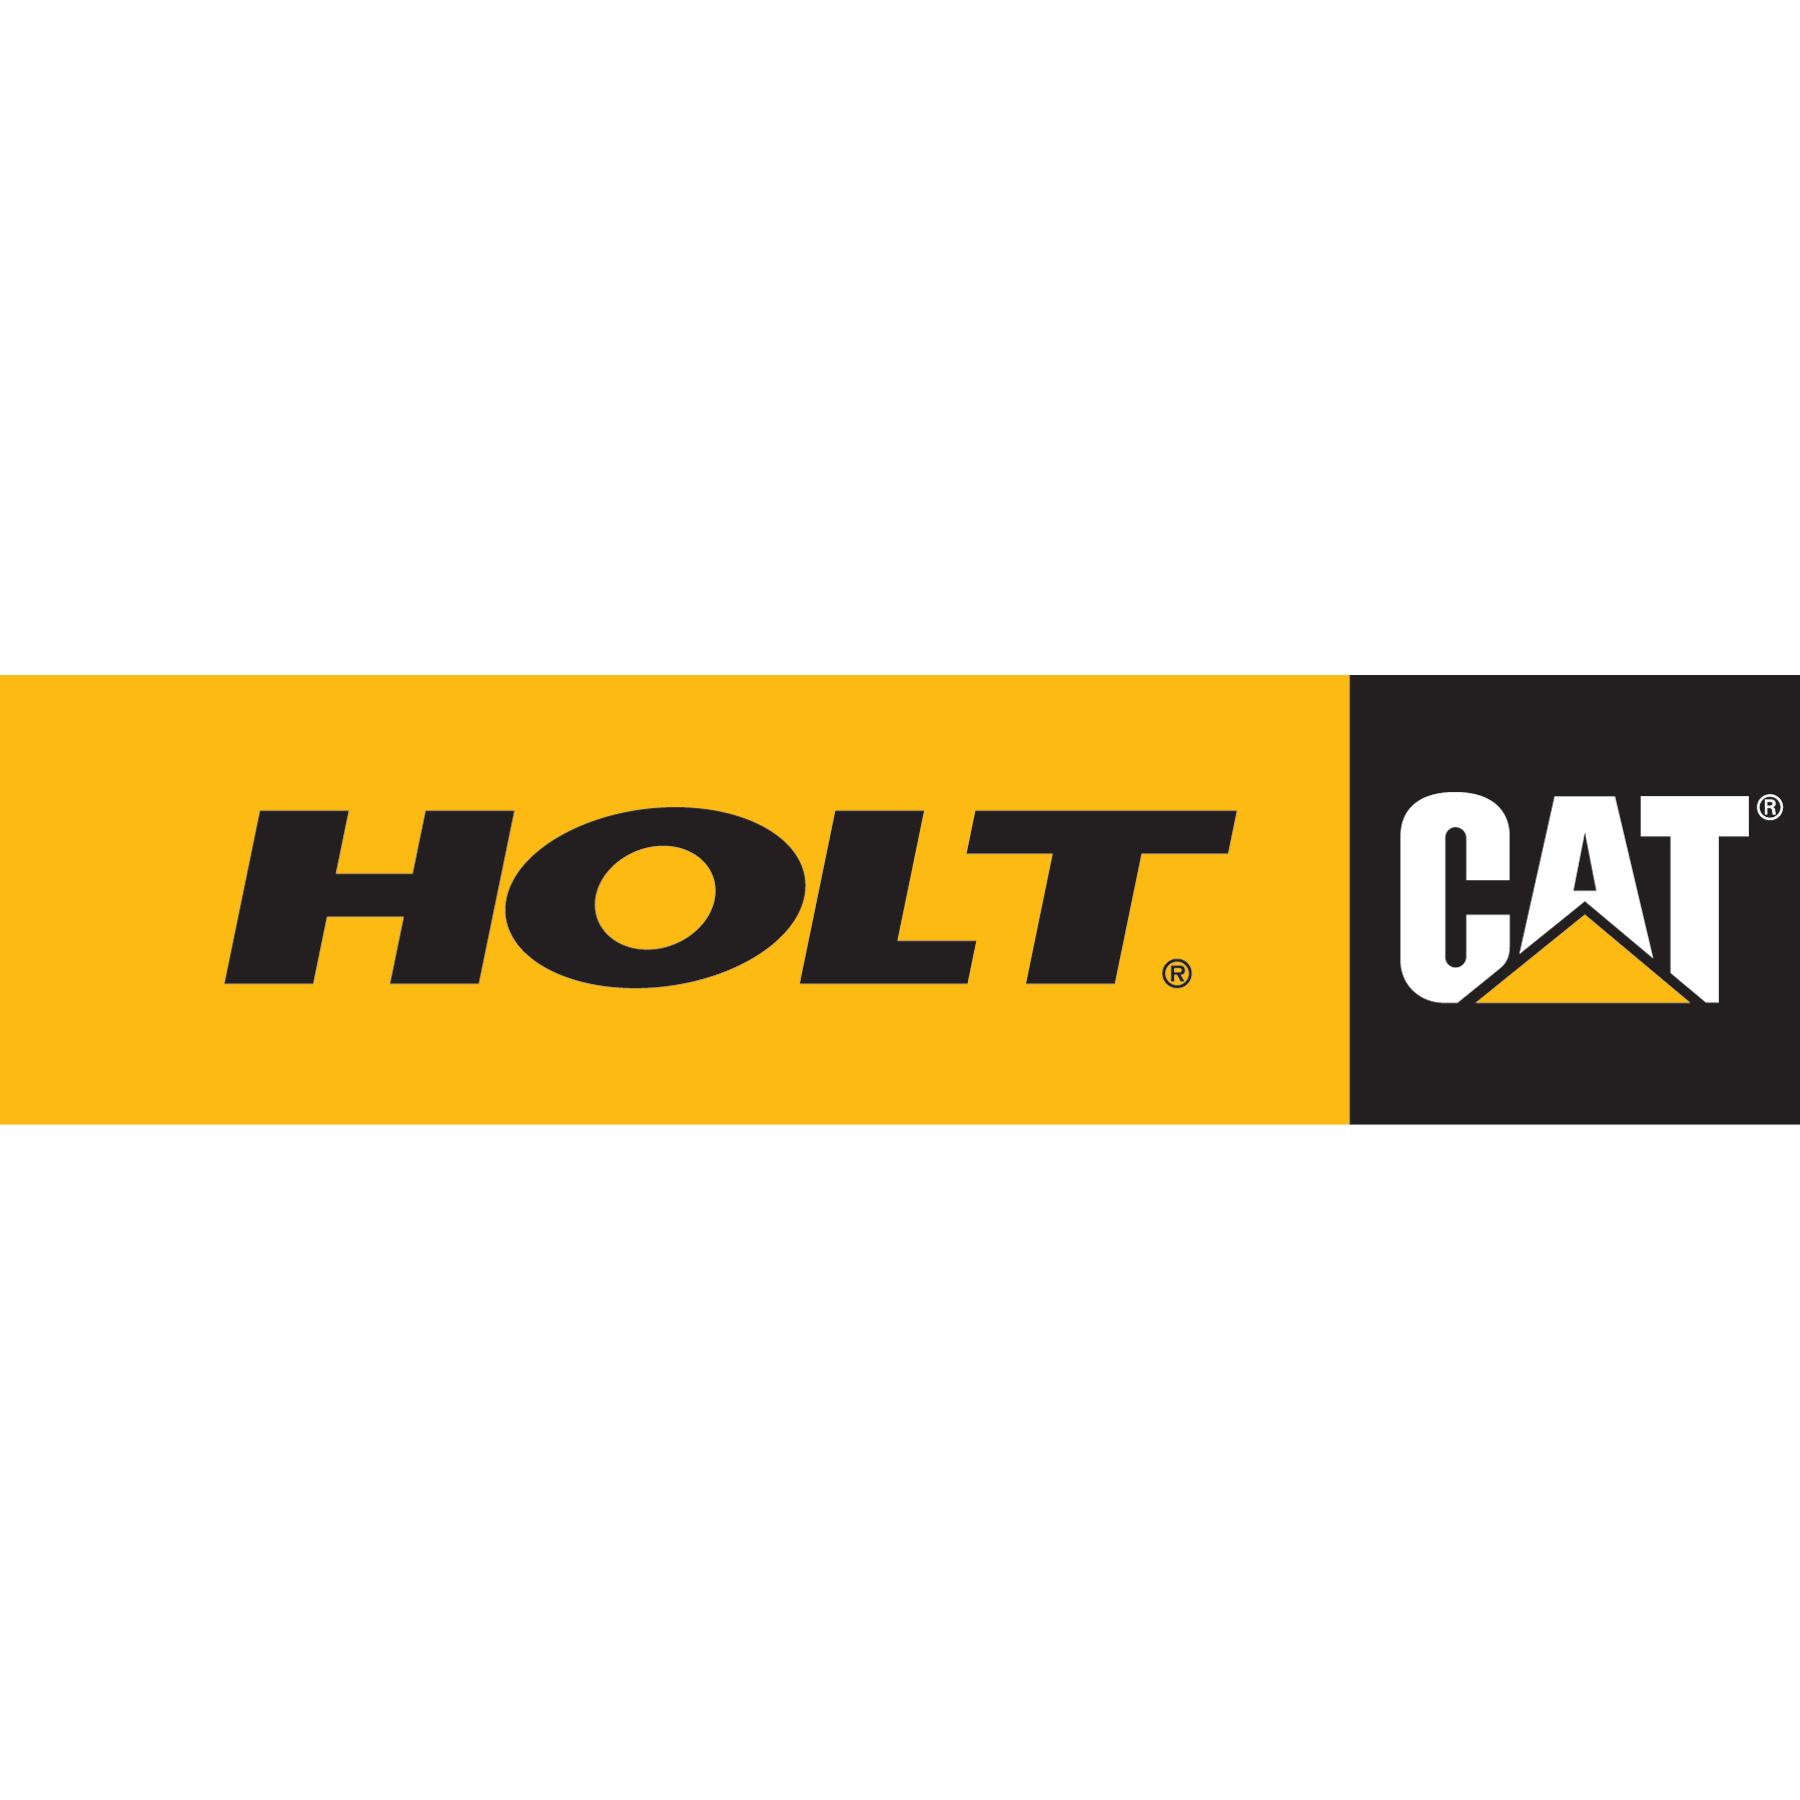 HOLT CAT Waco